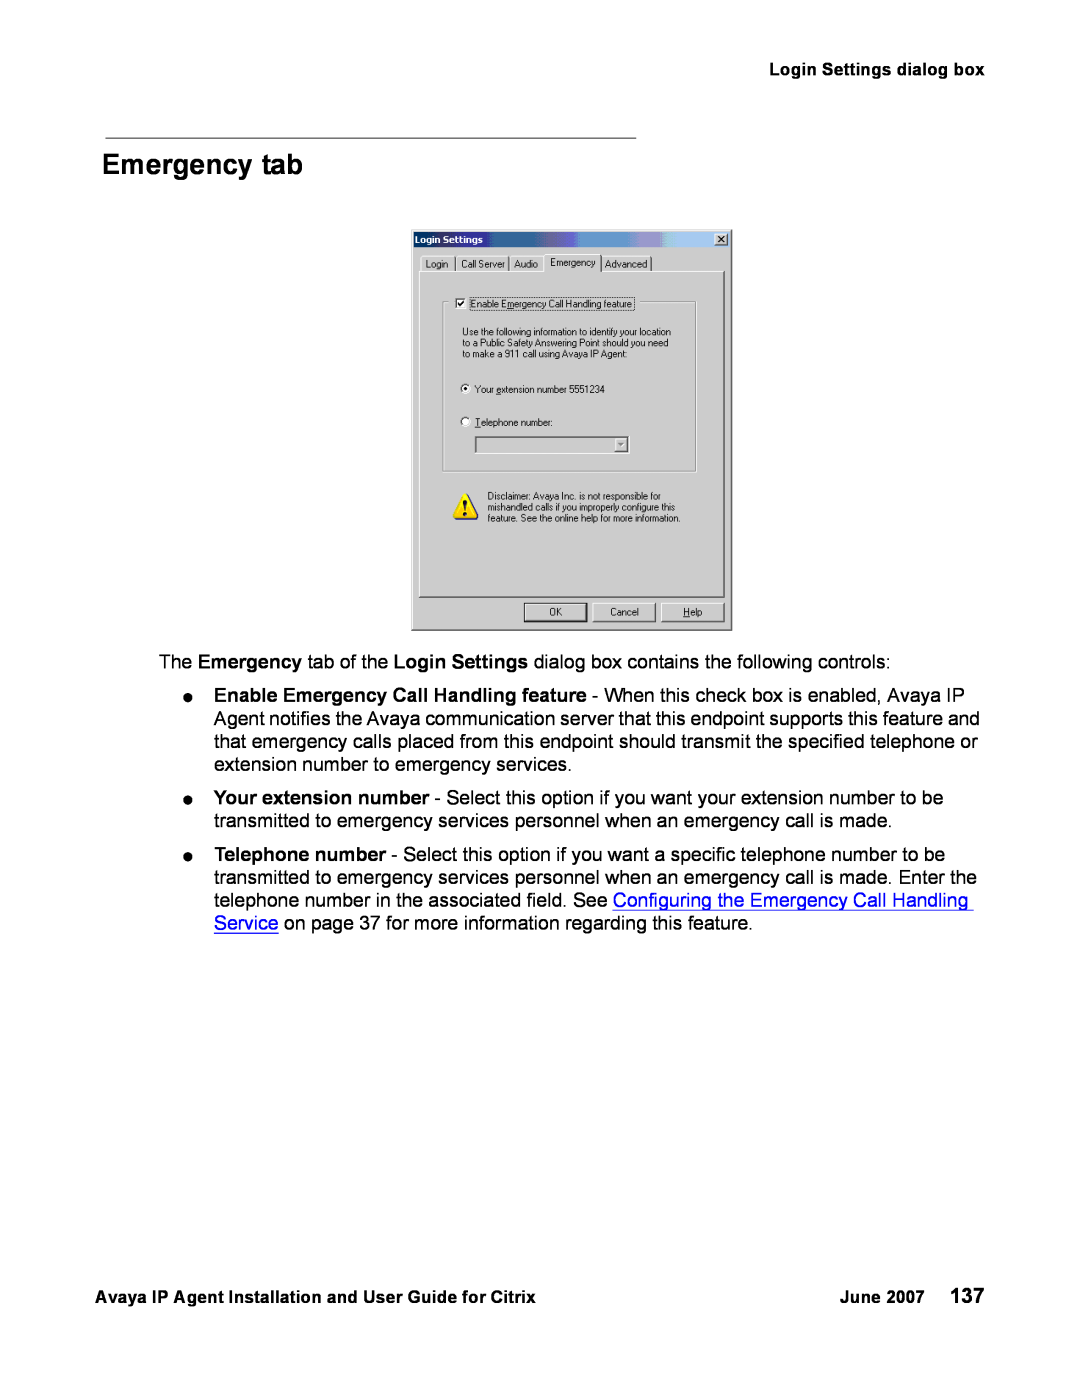 Avaya 7 manual Emergency tab 